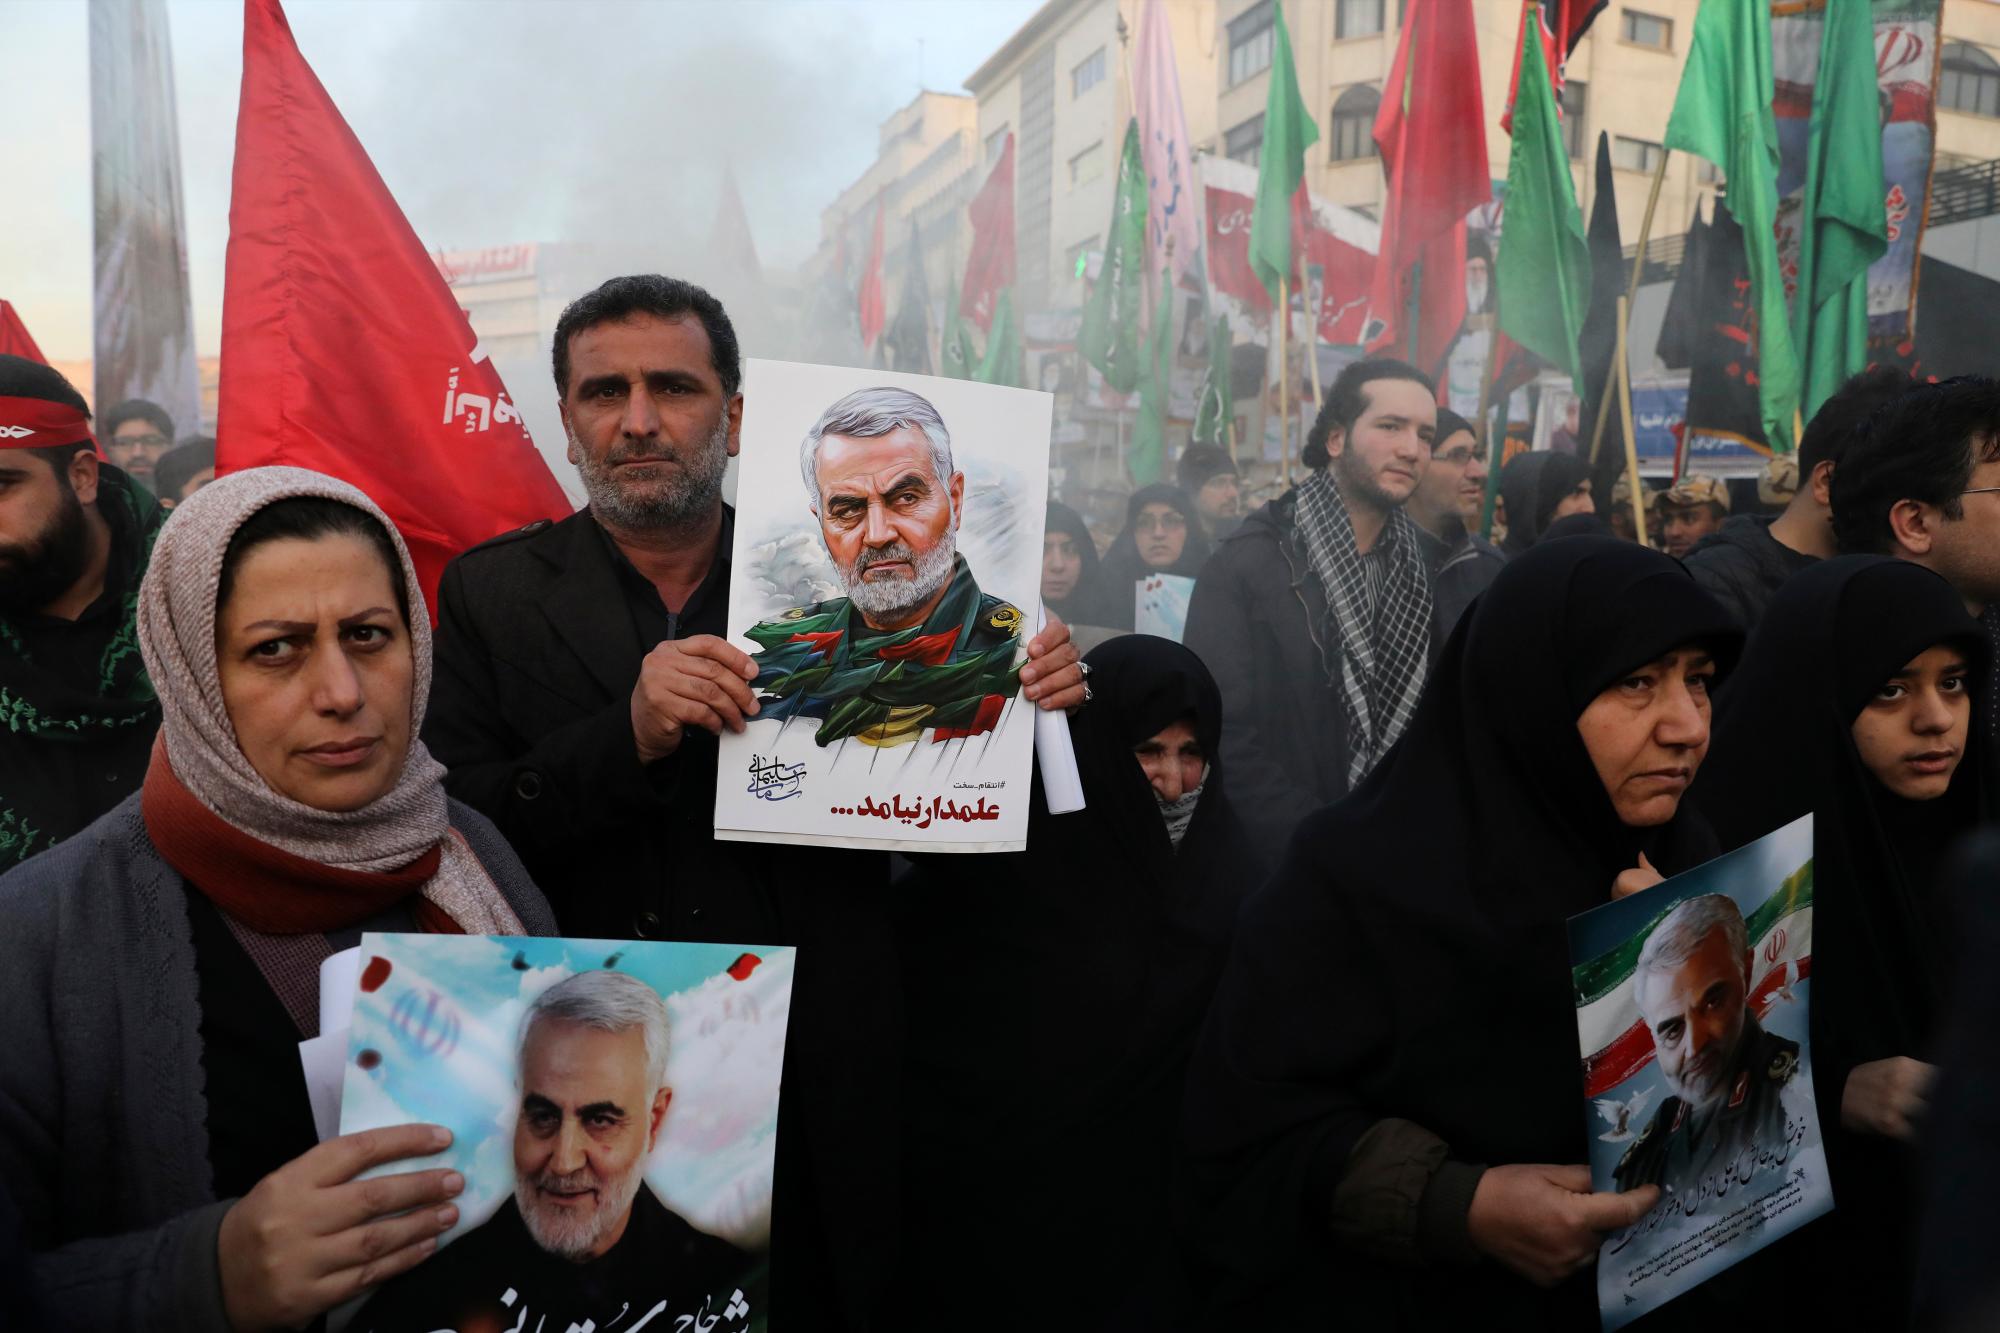 Los dolientes con carteles del general iraní Qassem Soleimani asisten a una ceremonia fúnebre para él y sus camaradas, que fueron asesinados en Irak en un ataque con aviones no tripulados de Estados Unidos el viernes, en la Plaza Enqelab-e-Eslami (Revolución Islámica) en Teherán, Irán, el lunes , 6 de enero de 2020. (Foto AP / Ebrahim Noroozi)